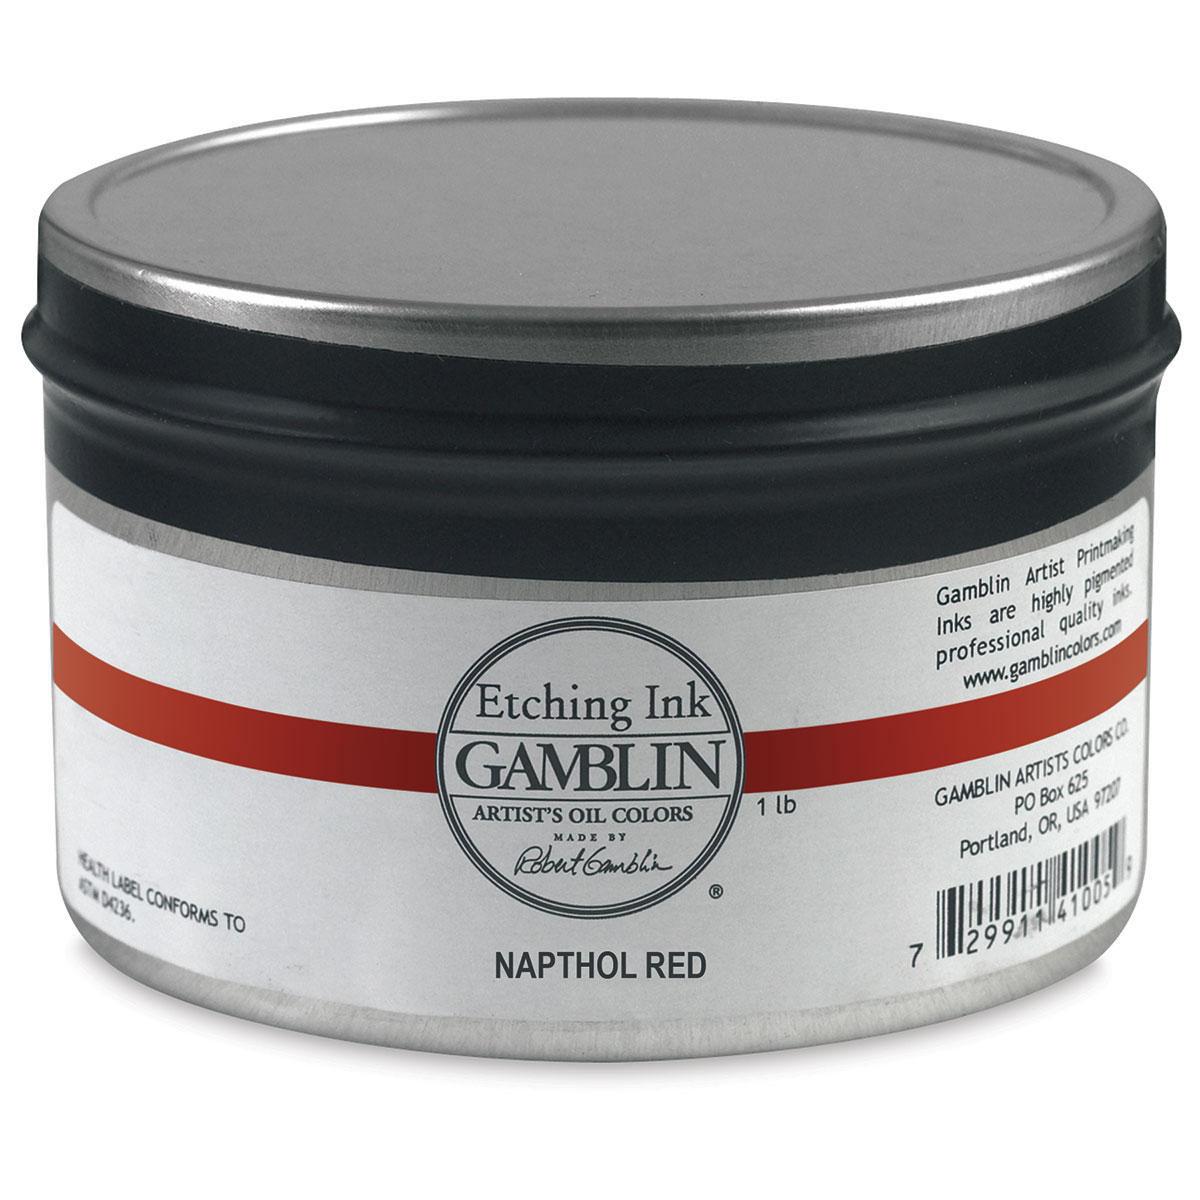 Gamblin Etching Ink - Napthol Red, 1 lb